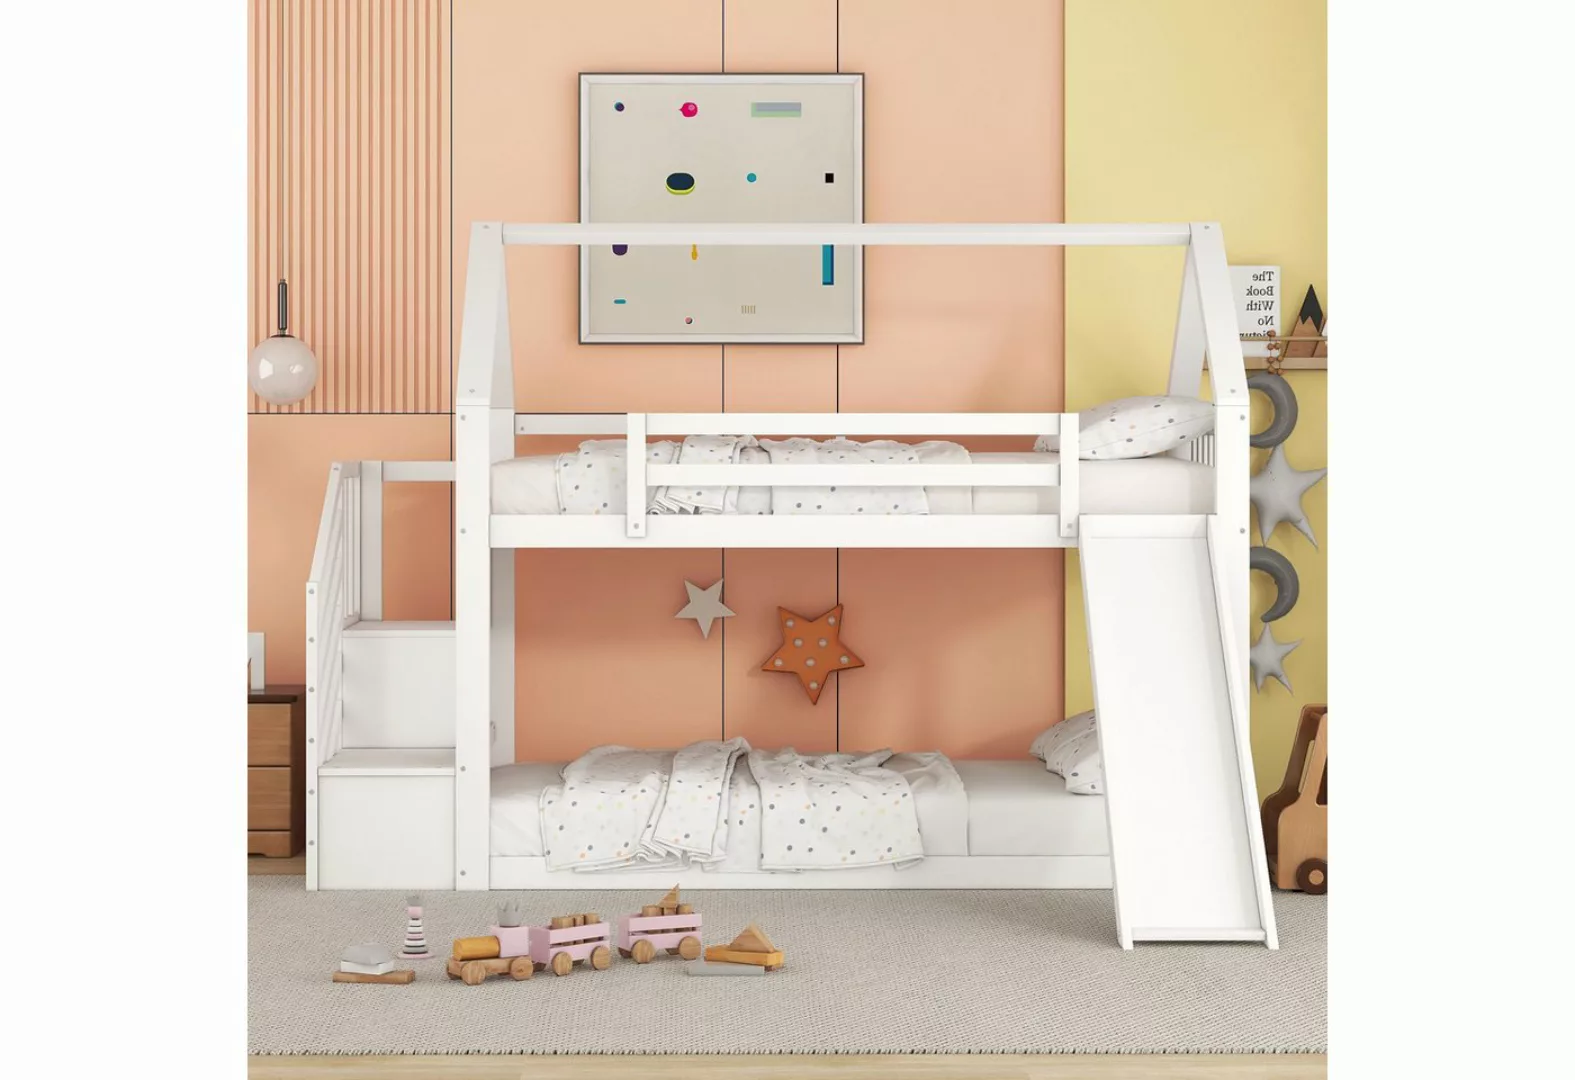 IDEASY Jugendbett Kinderbett Etagenbett, Hausprofil, weiß/grau, 90x200 cm, günstig online kaufen